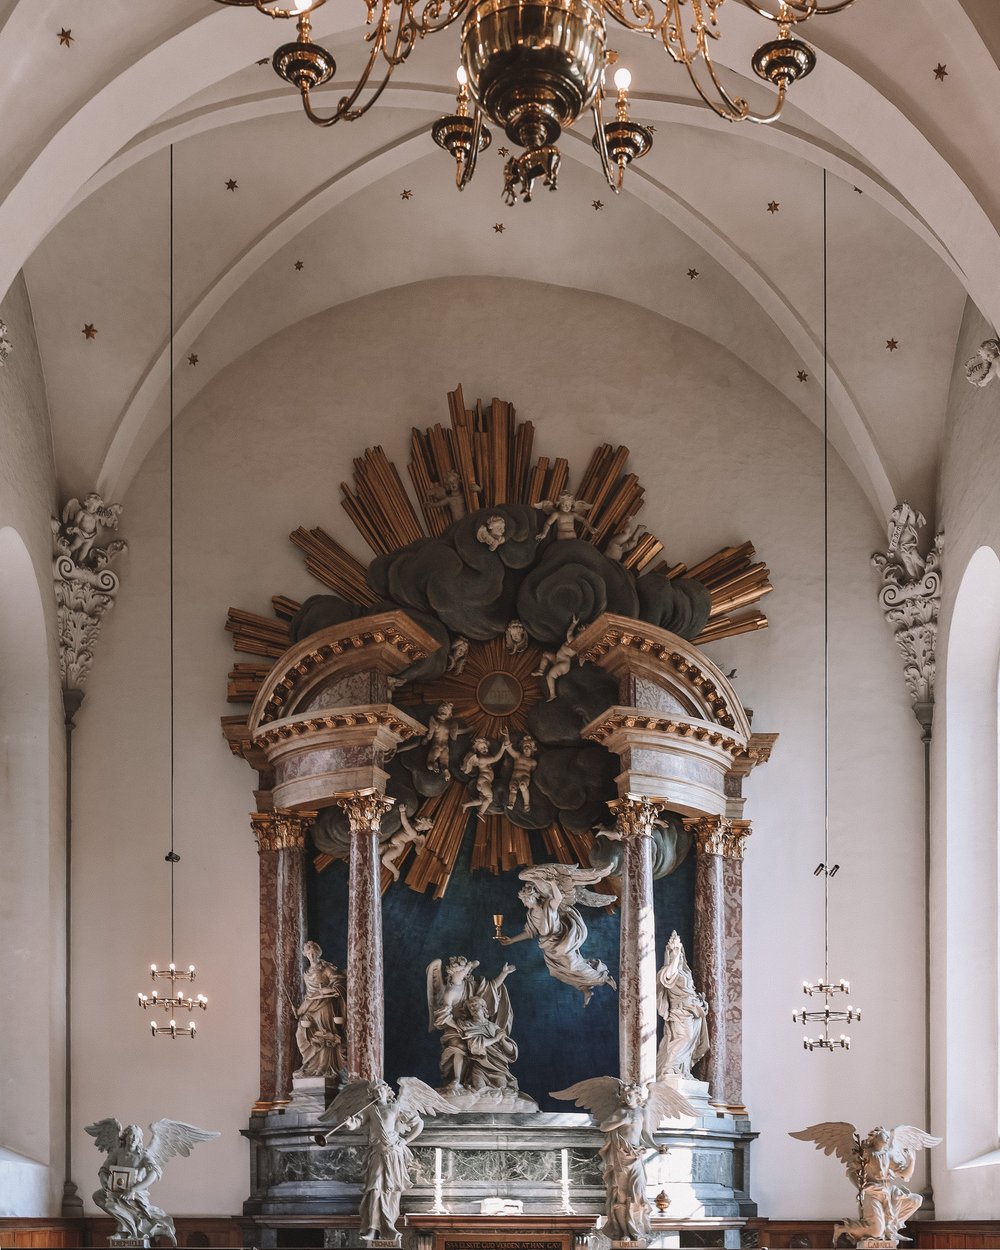 Art inside the church - Church of the Saviour - Copenhagen - Denmark